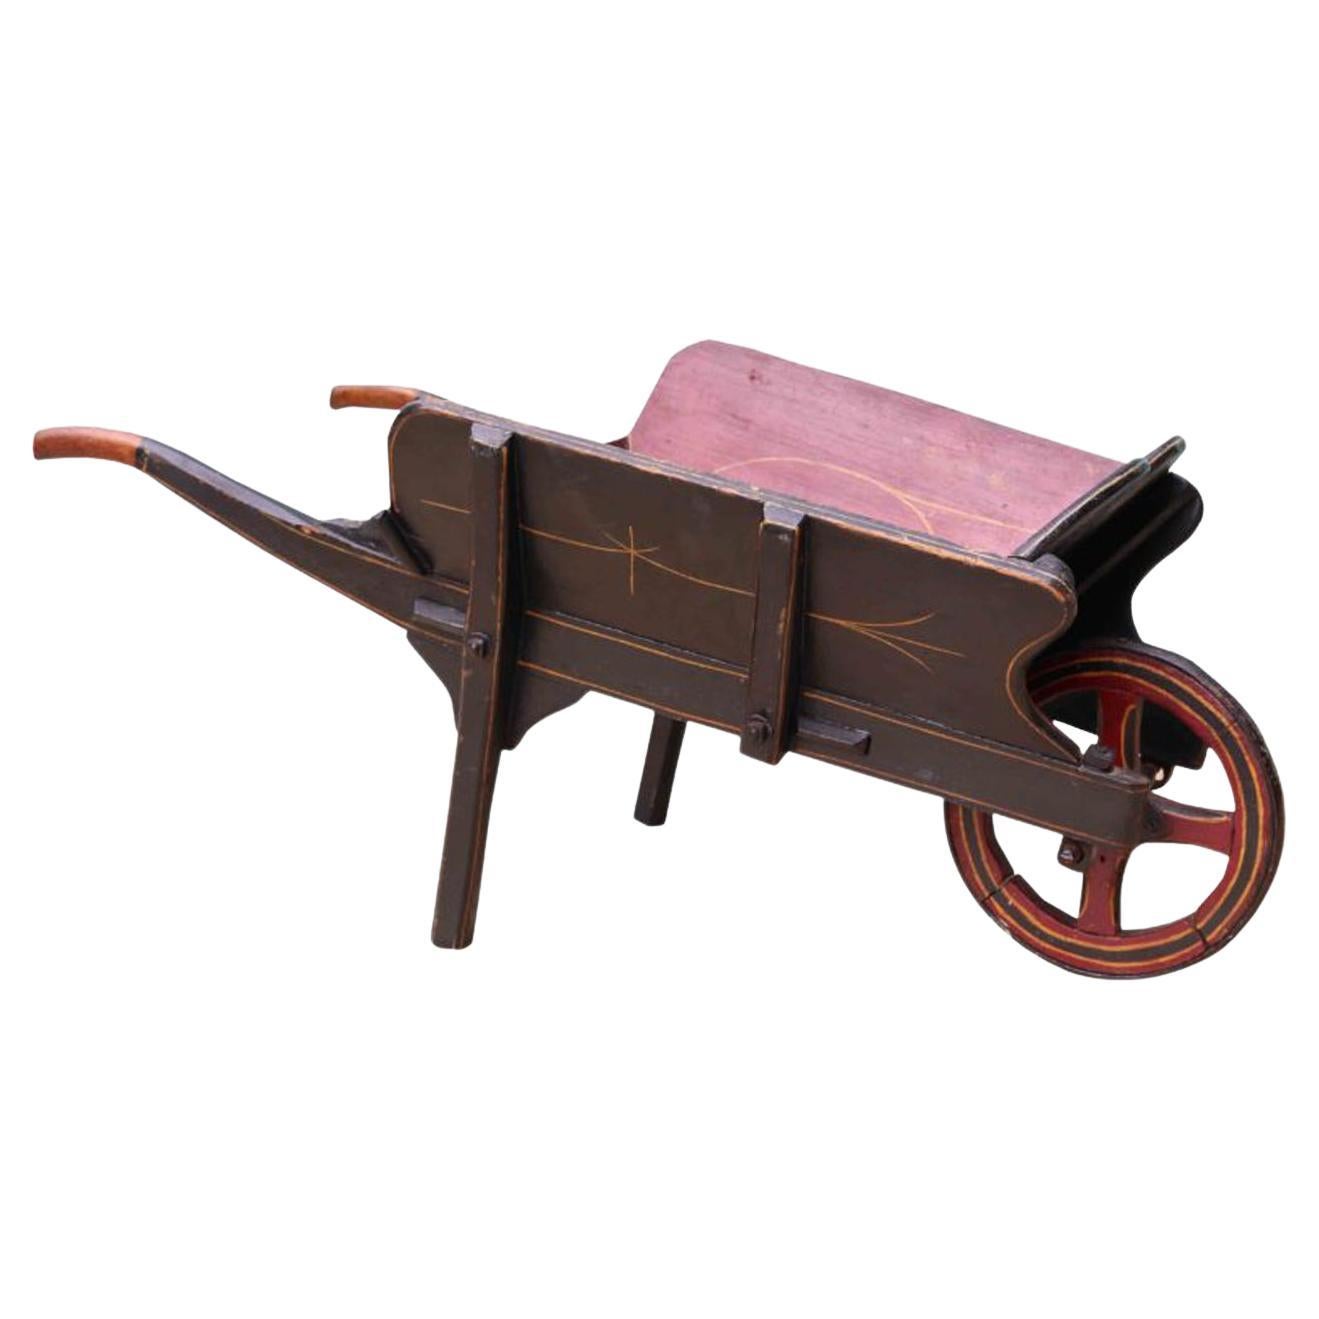 Children’s Antique Push Cart